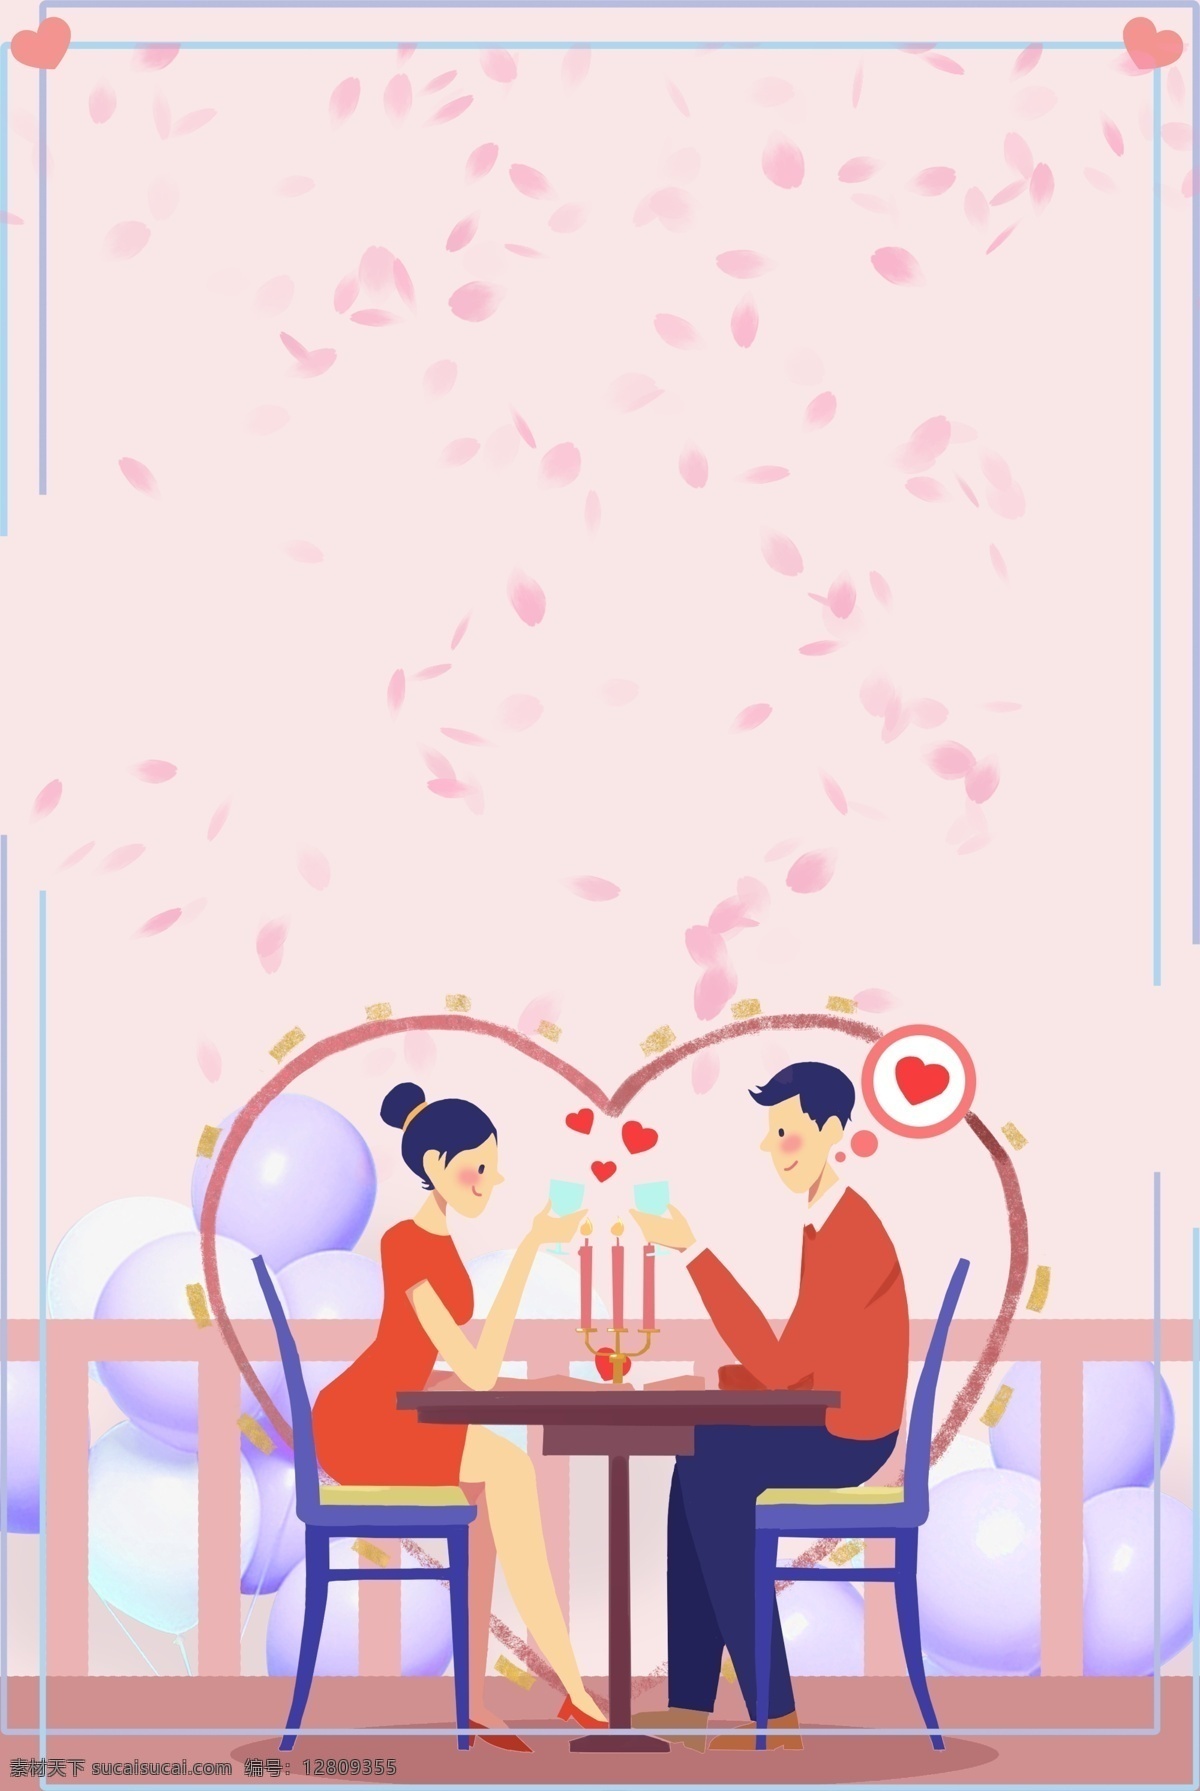 文艺 卡 通风 情人节 520 餐厅 情侣 背景 卡通风 爱心 恩爱 粉色